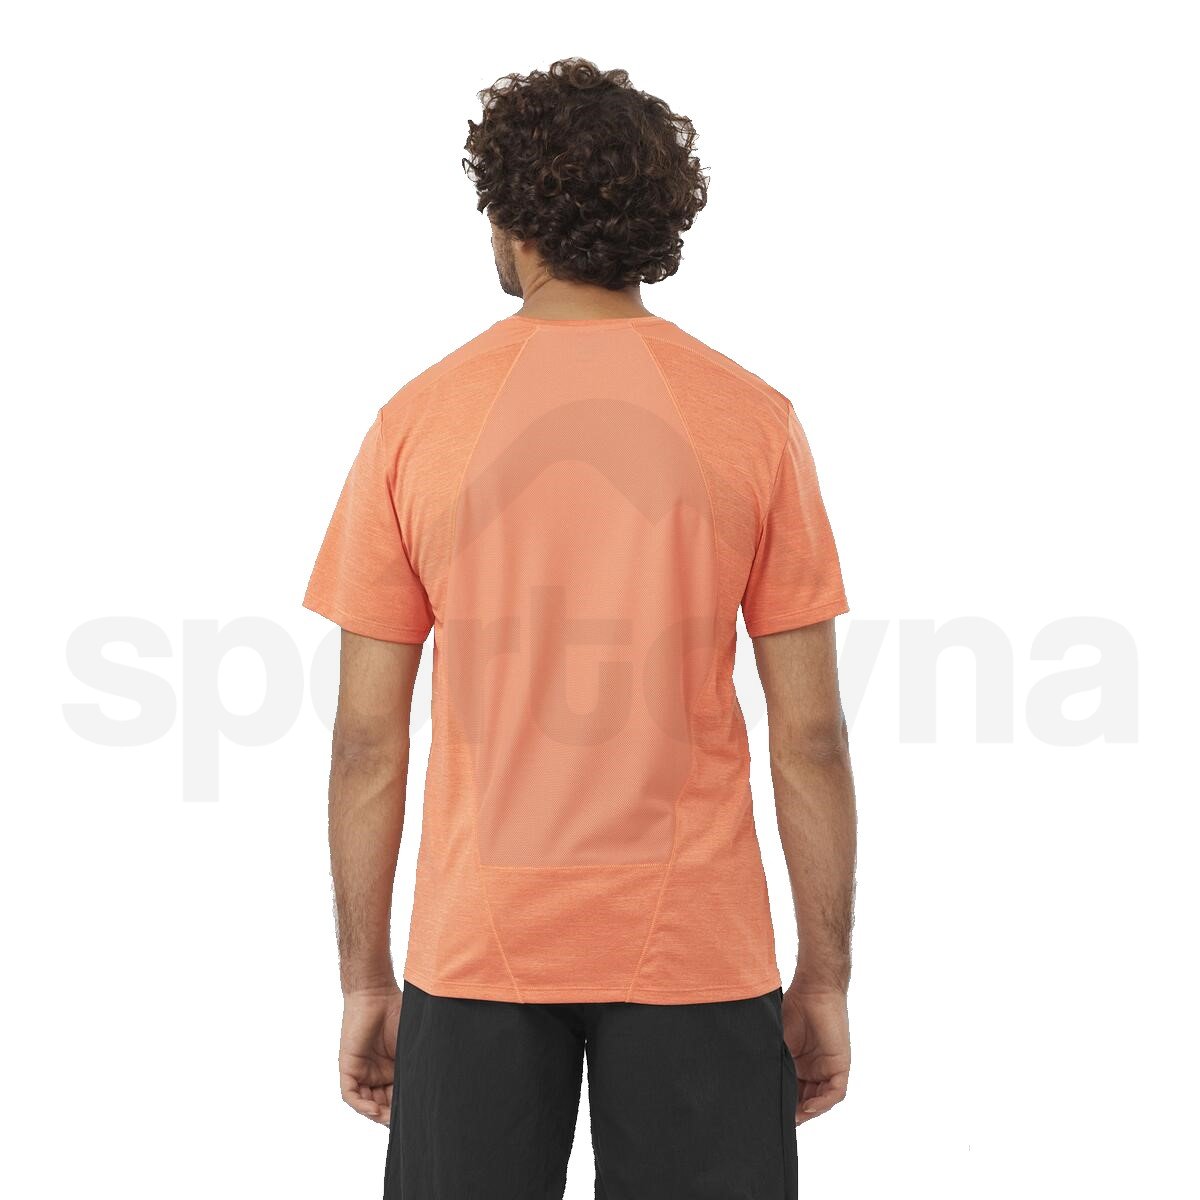 Tričko Salomon Outline SS Tee M - oranžová